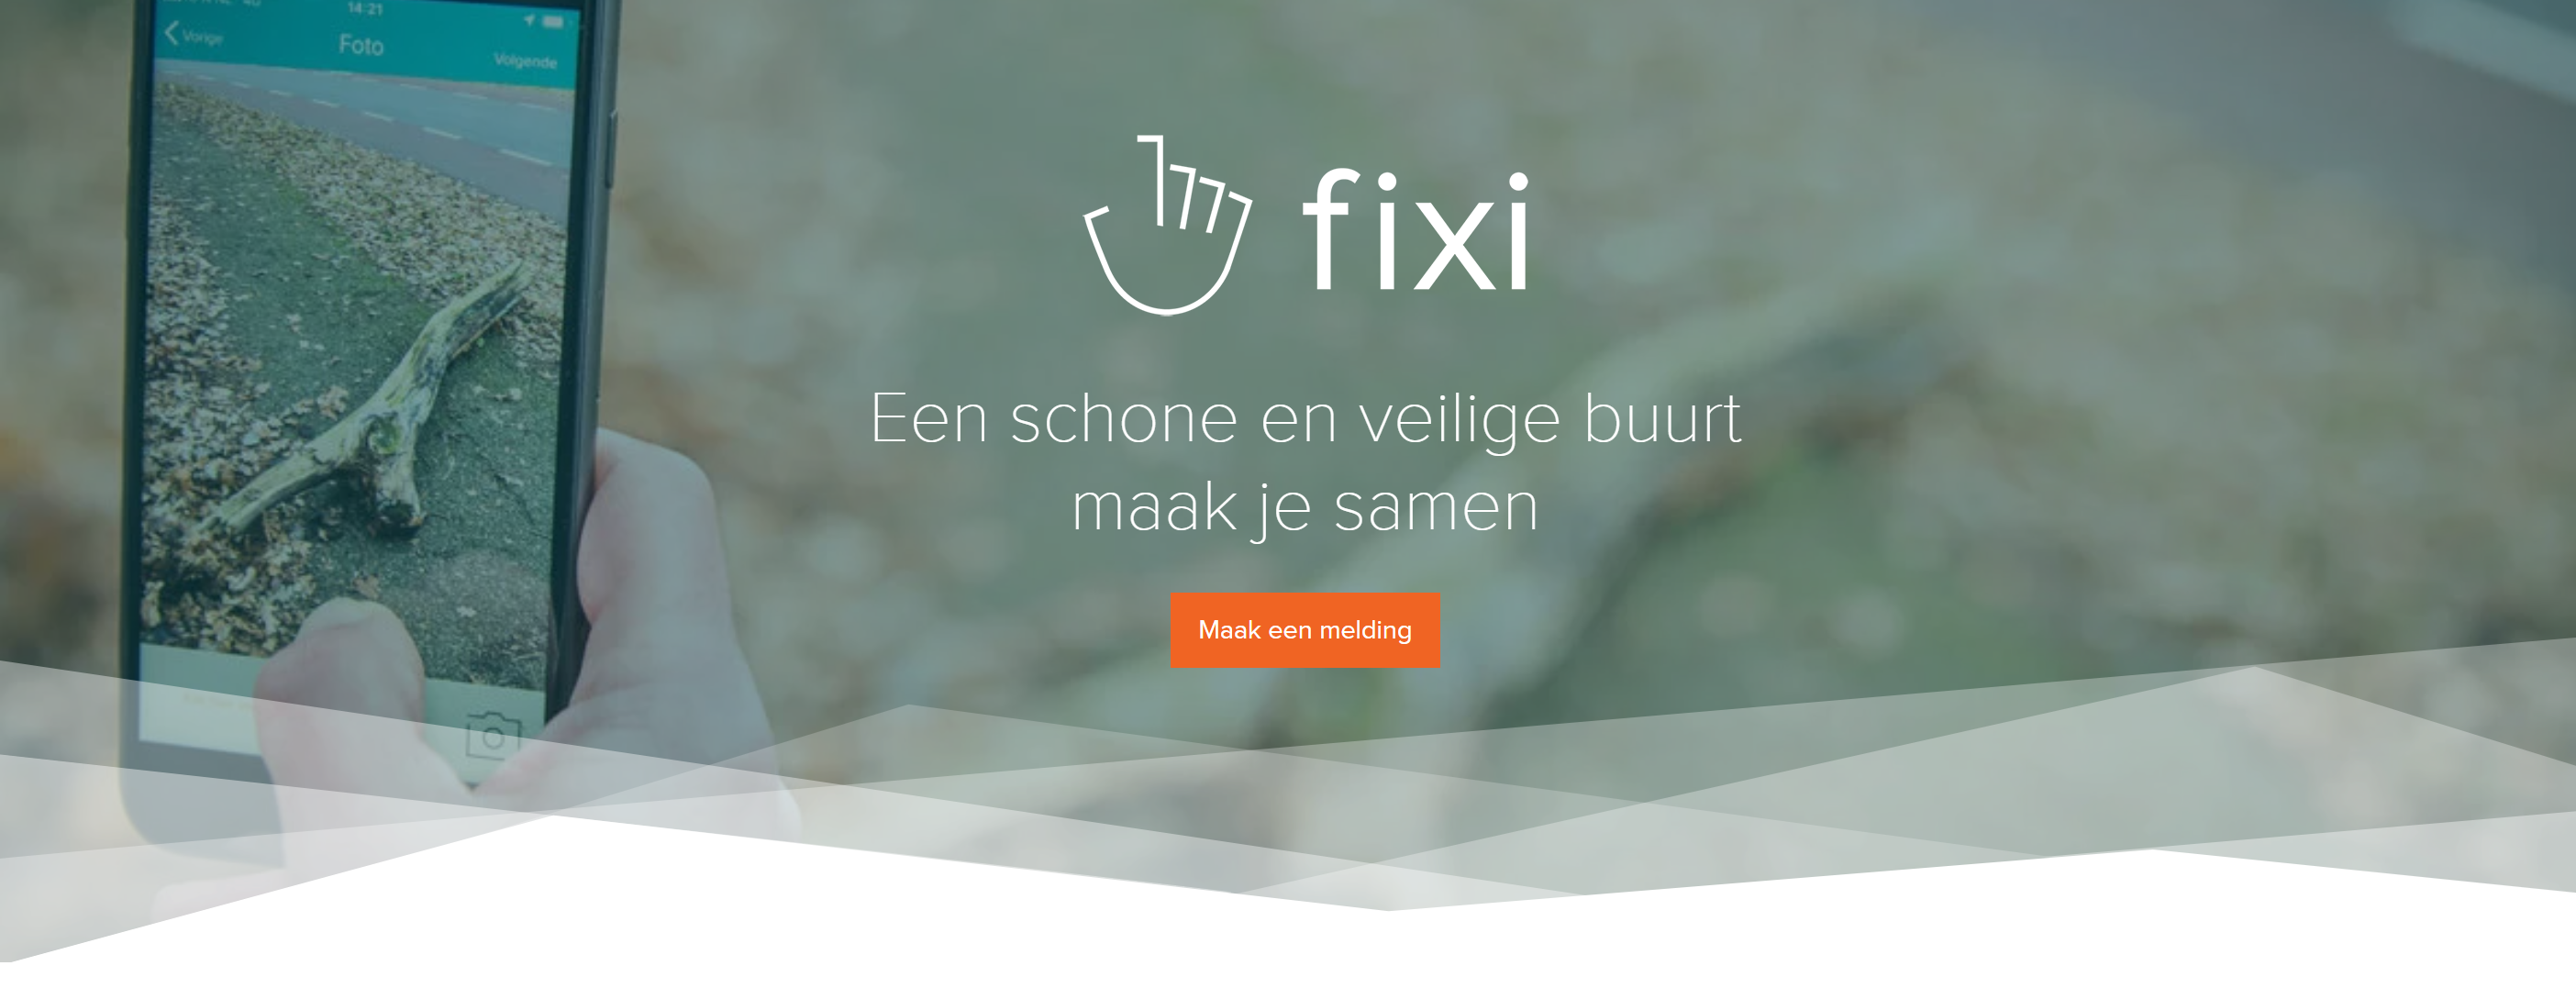 Homepage van Fixi met daarop een smartphone met de app en een aanmeldknop